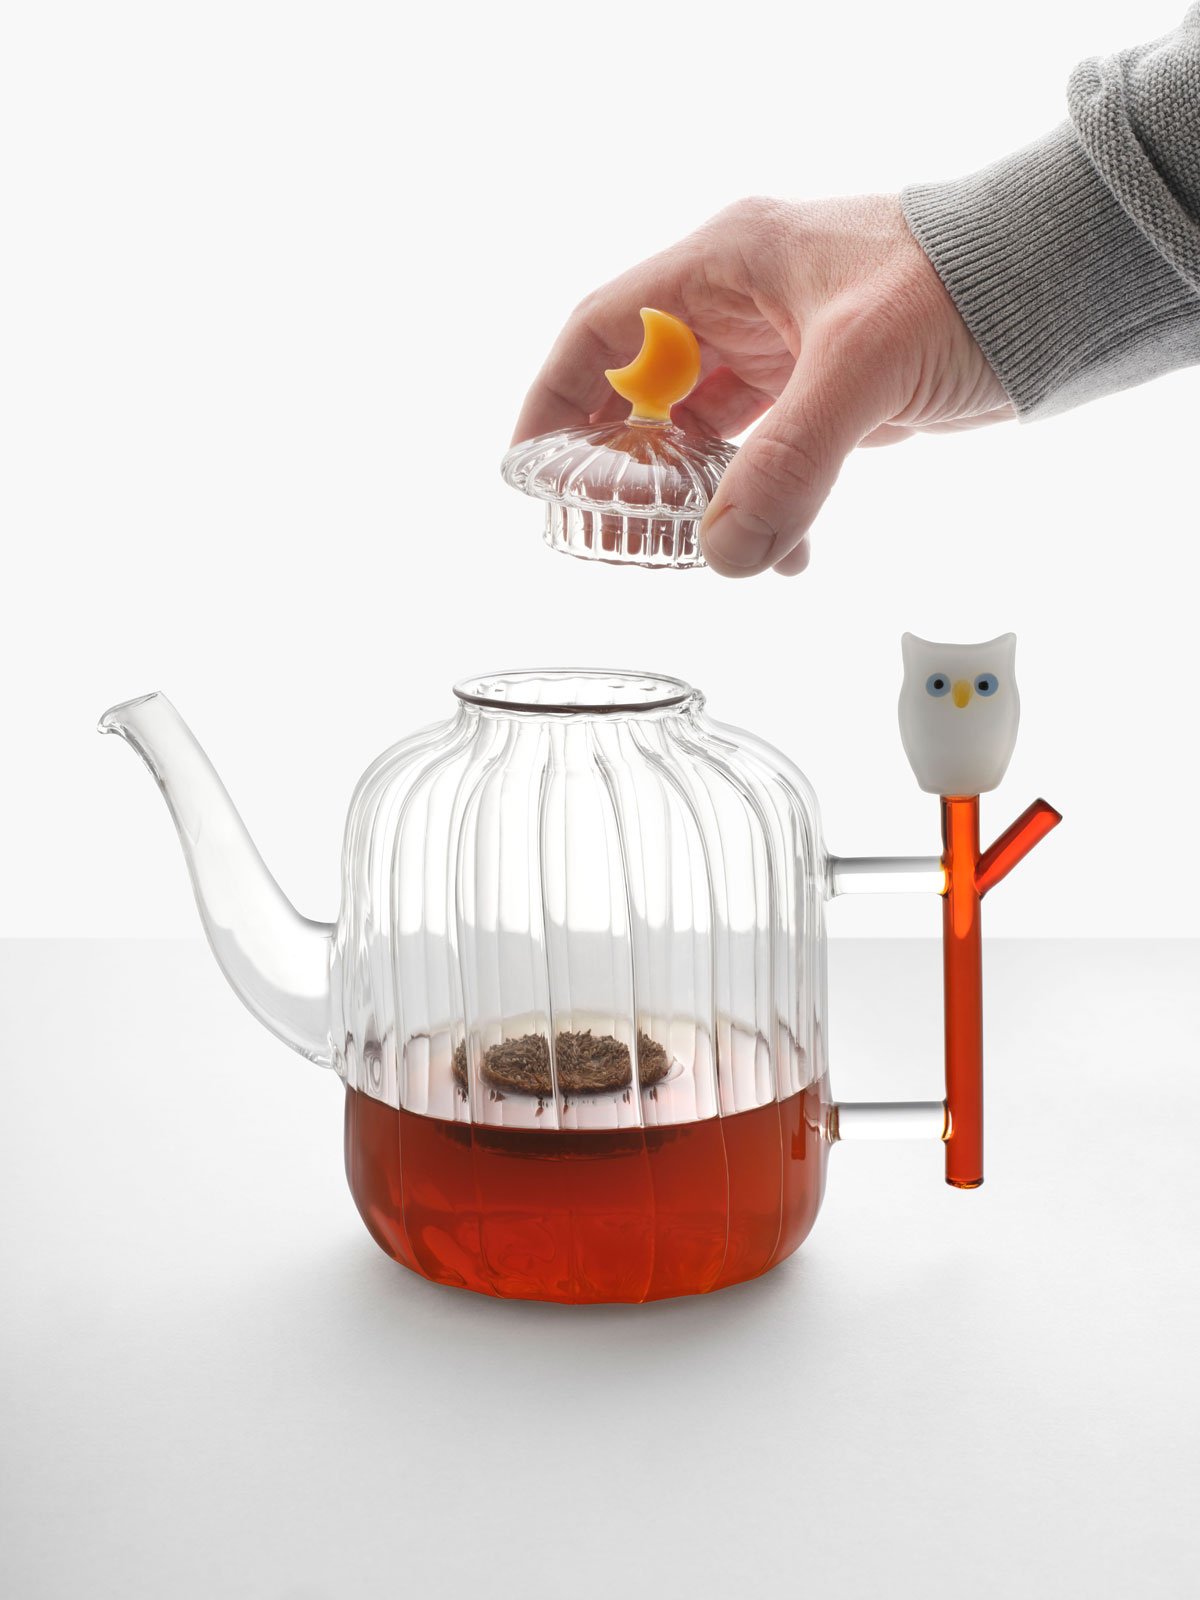 Ichendorf Milano Animal Farm Teapot with Owl, Borosilicate Glass on Food52